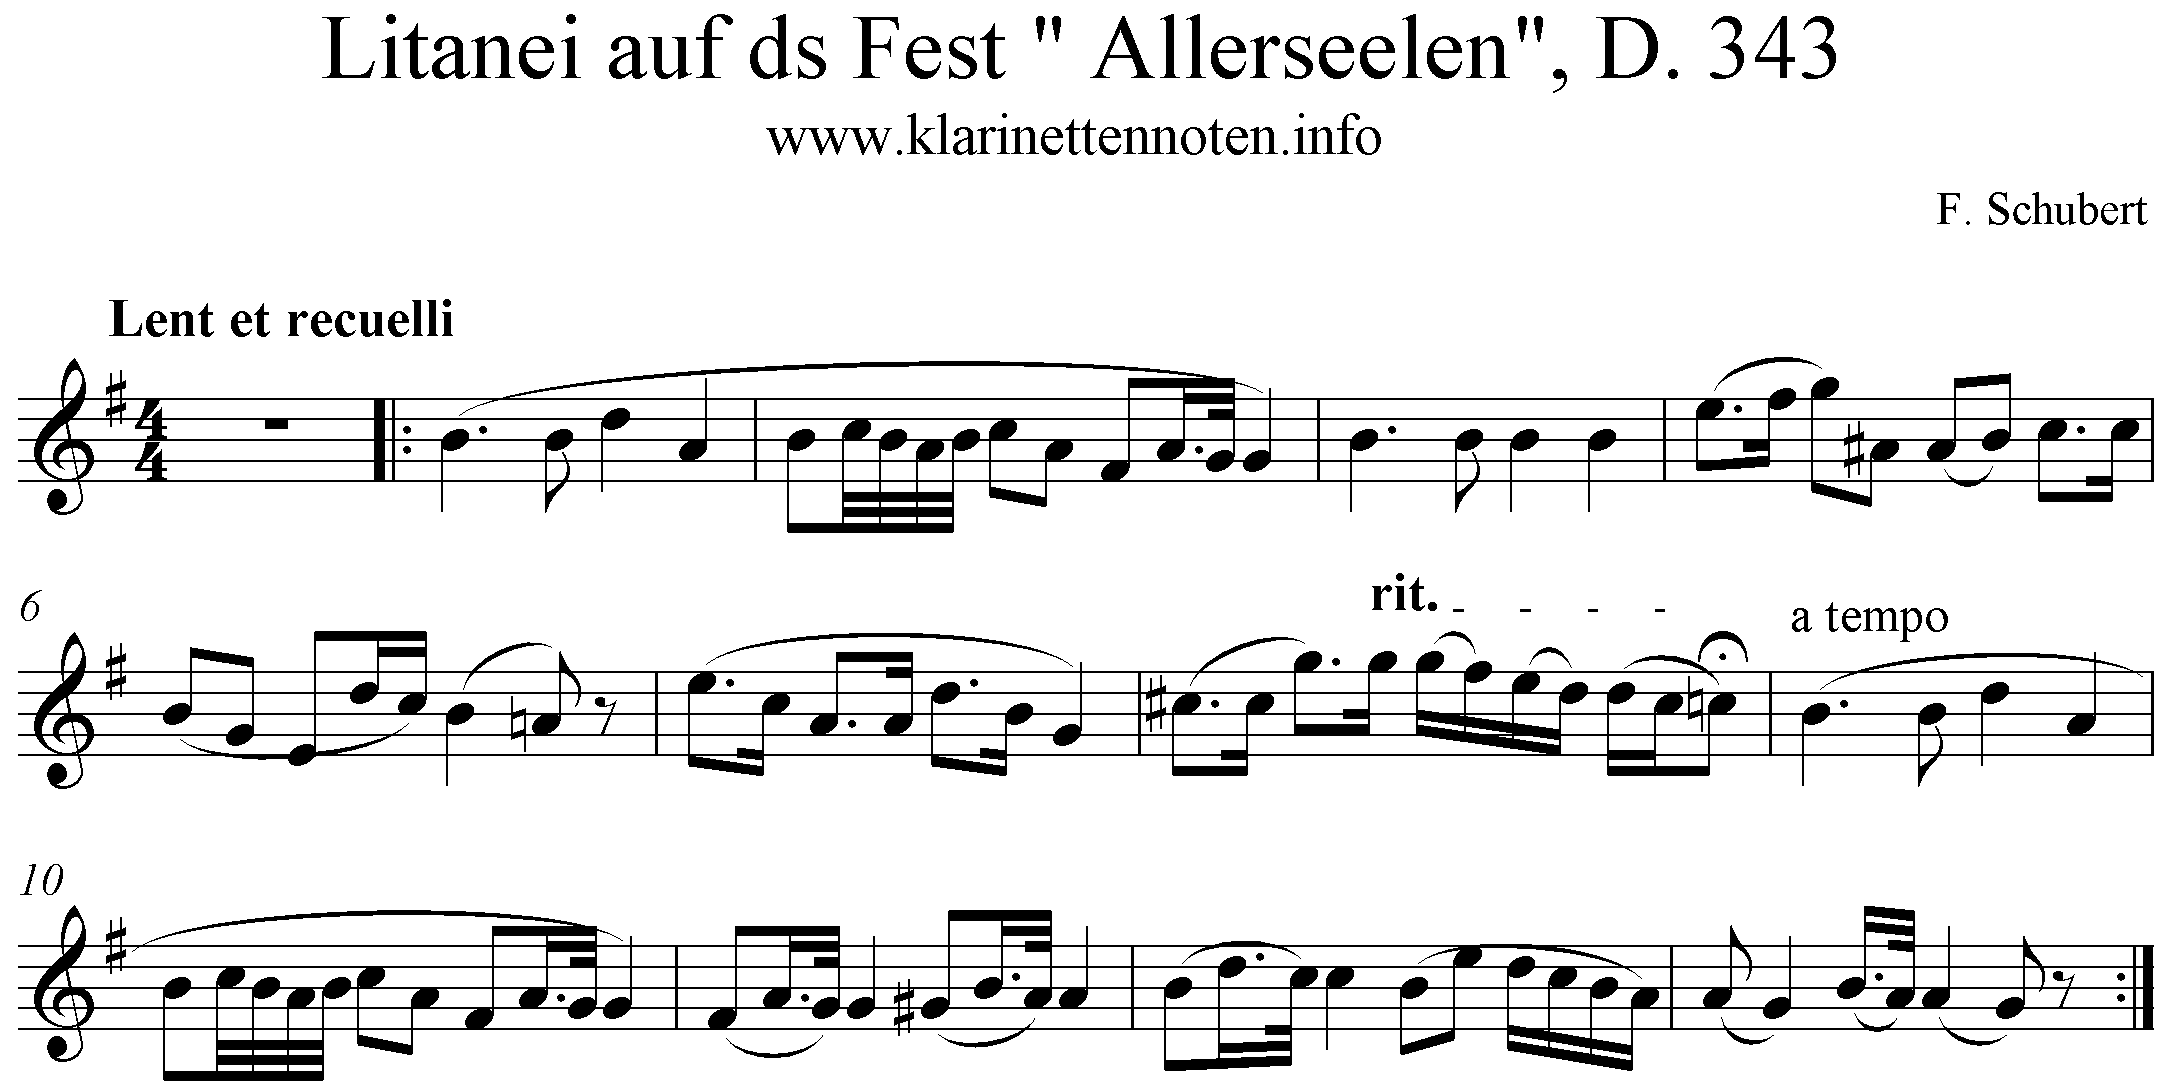 Noten Litanei, D.343, Schubert